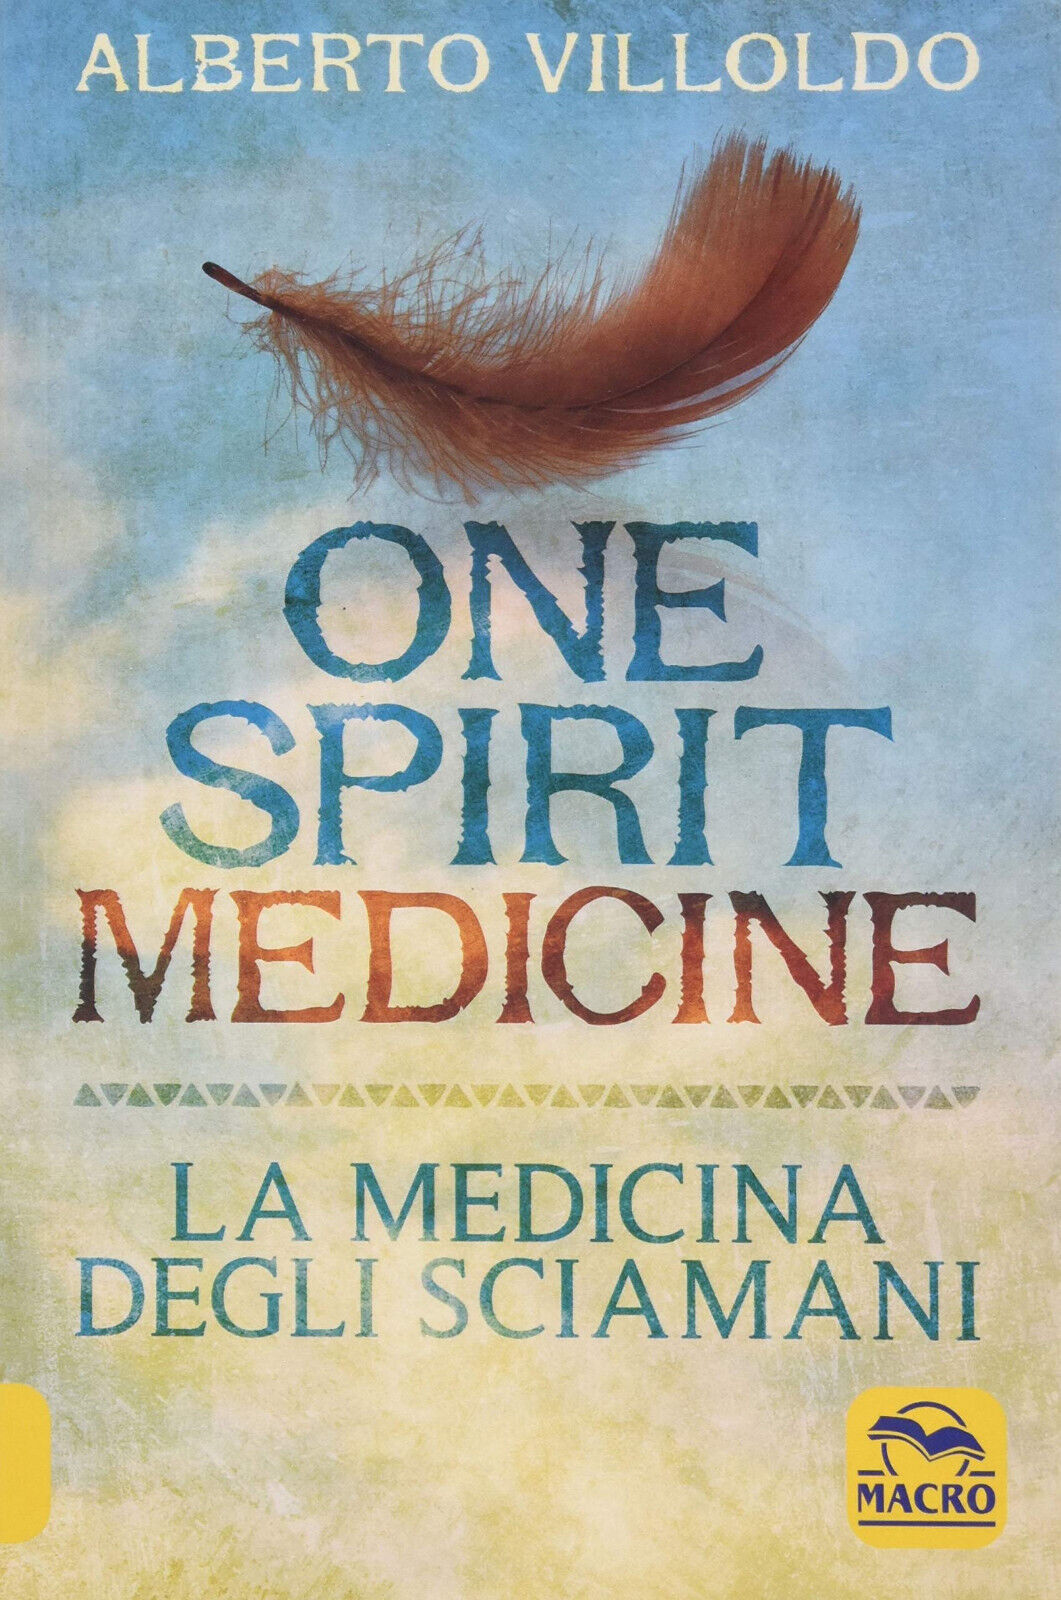 One Spirit Medicine - La Medicina degli Sciamani - Alberto Villoldo - 2020 libro usato